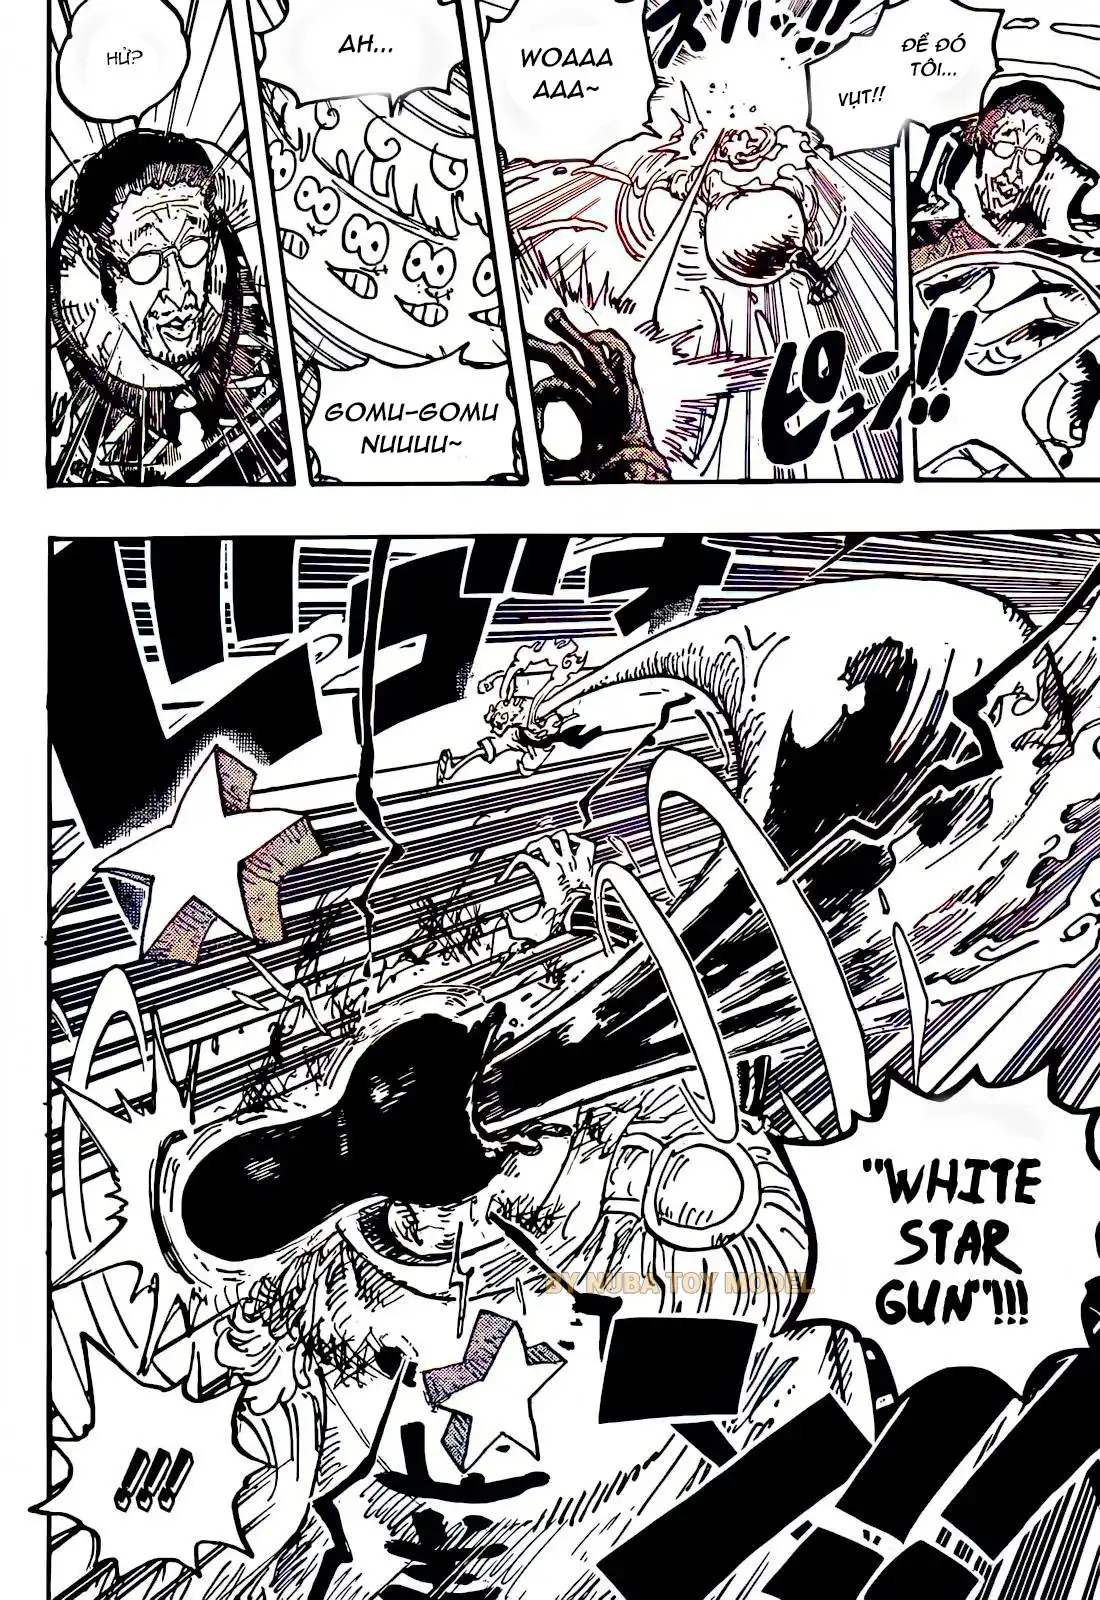 Luffy cuối cùng cũng đuổi kịp Kizaru và cả hai bắt đầu một cuộc chiến nảy lửa. Kizaru gợi ý về giới hạn của hình dạng hiện tại của luffy. Luffy tung ra một đòn tấn công mới đầy uy lực, "Gomu Gomu no Star Gun", không chỉ giáng một cú đấm tàn khốc vào Kizaru mà còn tạo ra một màn trình diễn ấn tượng với hiệu ứng giống như một ngôi sao. 